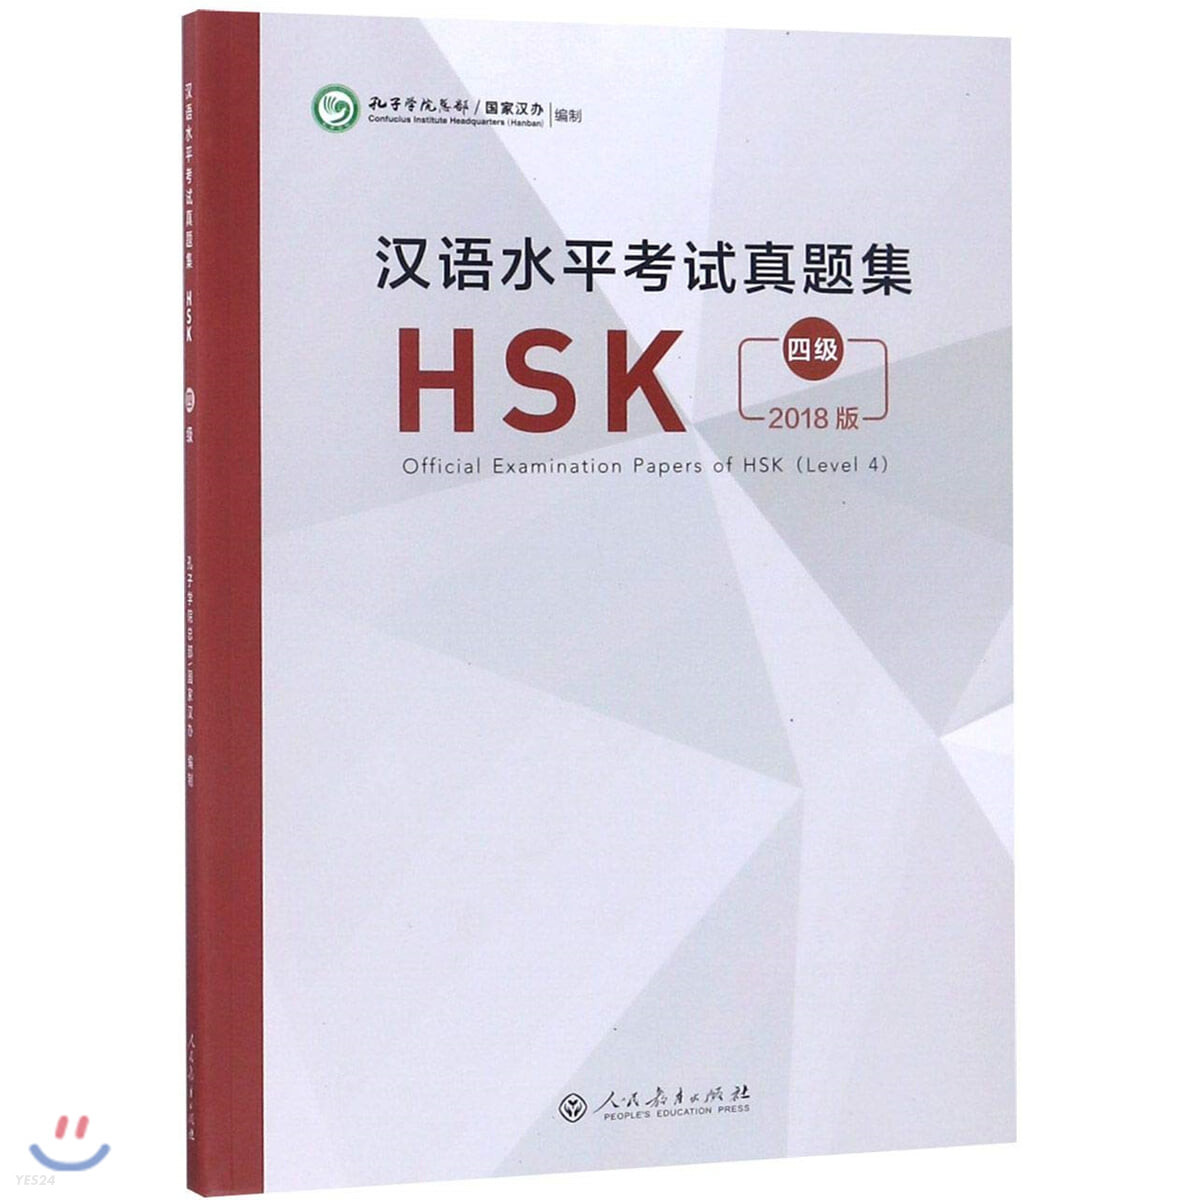 2018 漢語水平考試?題集  HSK 4級 한어수평고시진제집HSK 4급 Official Examination Papers of HSK (Level 4)